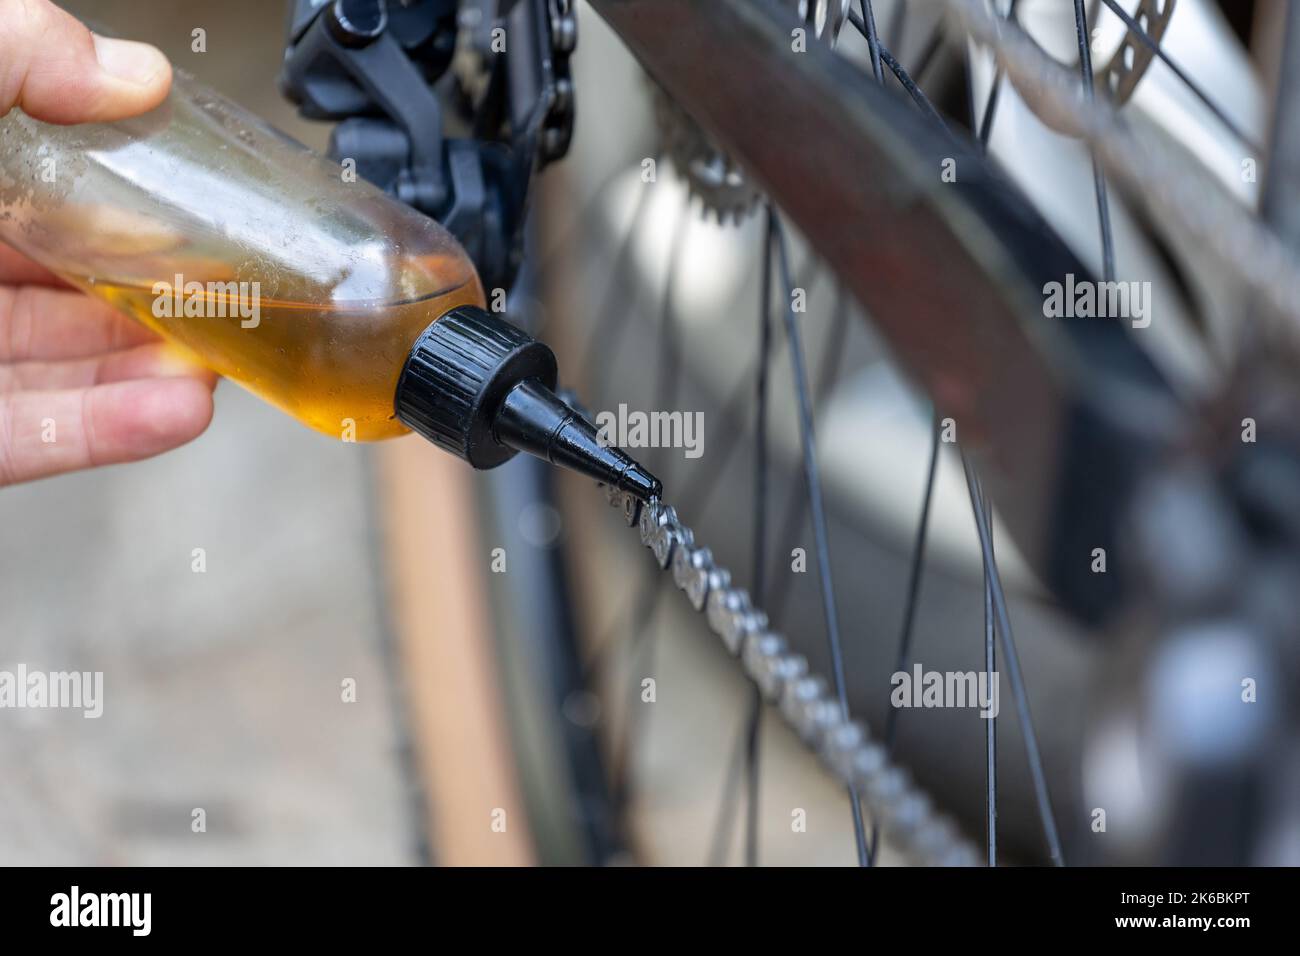 Die Fahrradkette mit Öl aus der Ölkanne schmieren. Servicearbeiten in einer  kleinen Werkstatt. Dunkler Hintergrund Stockfotografie - Alamy